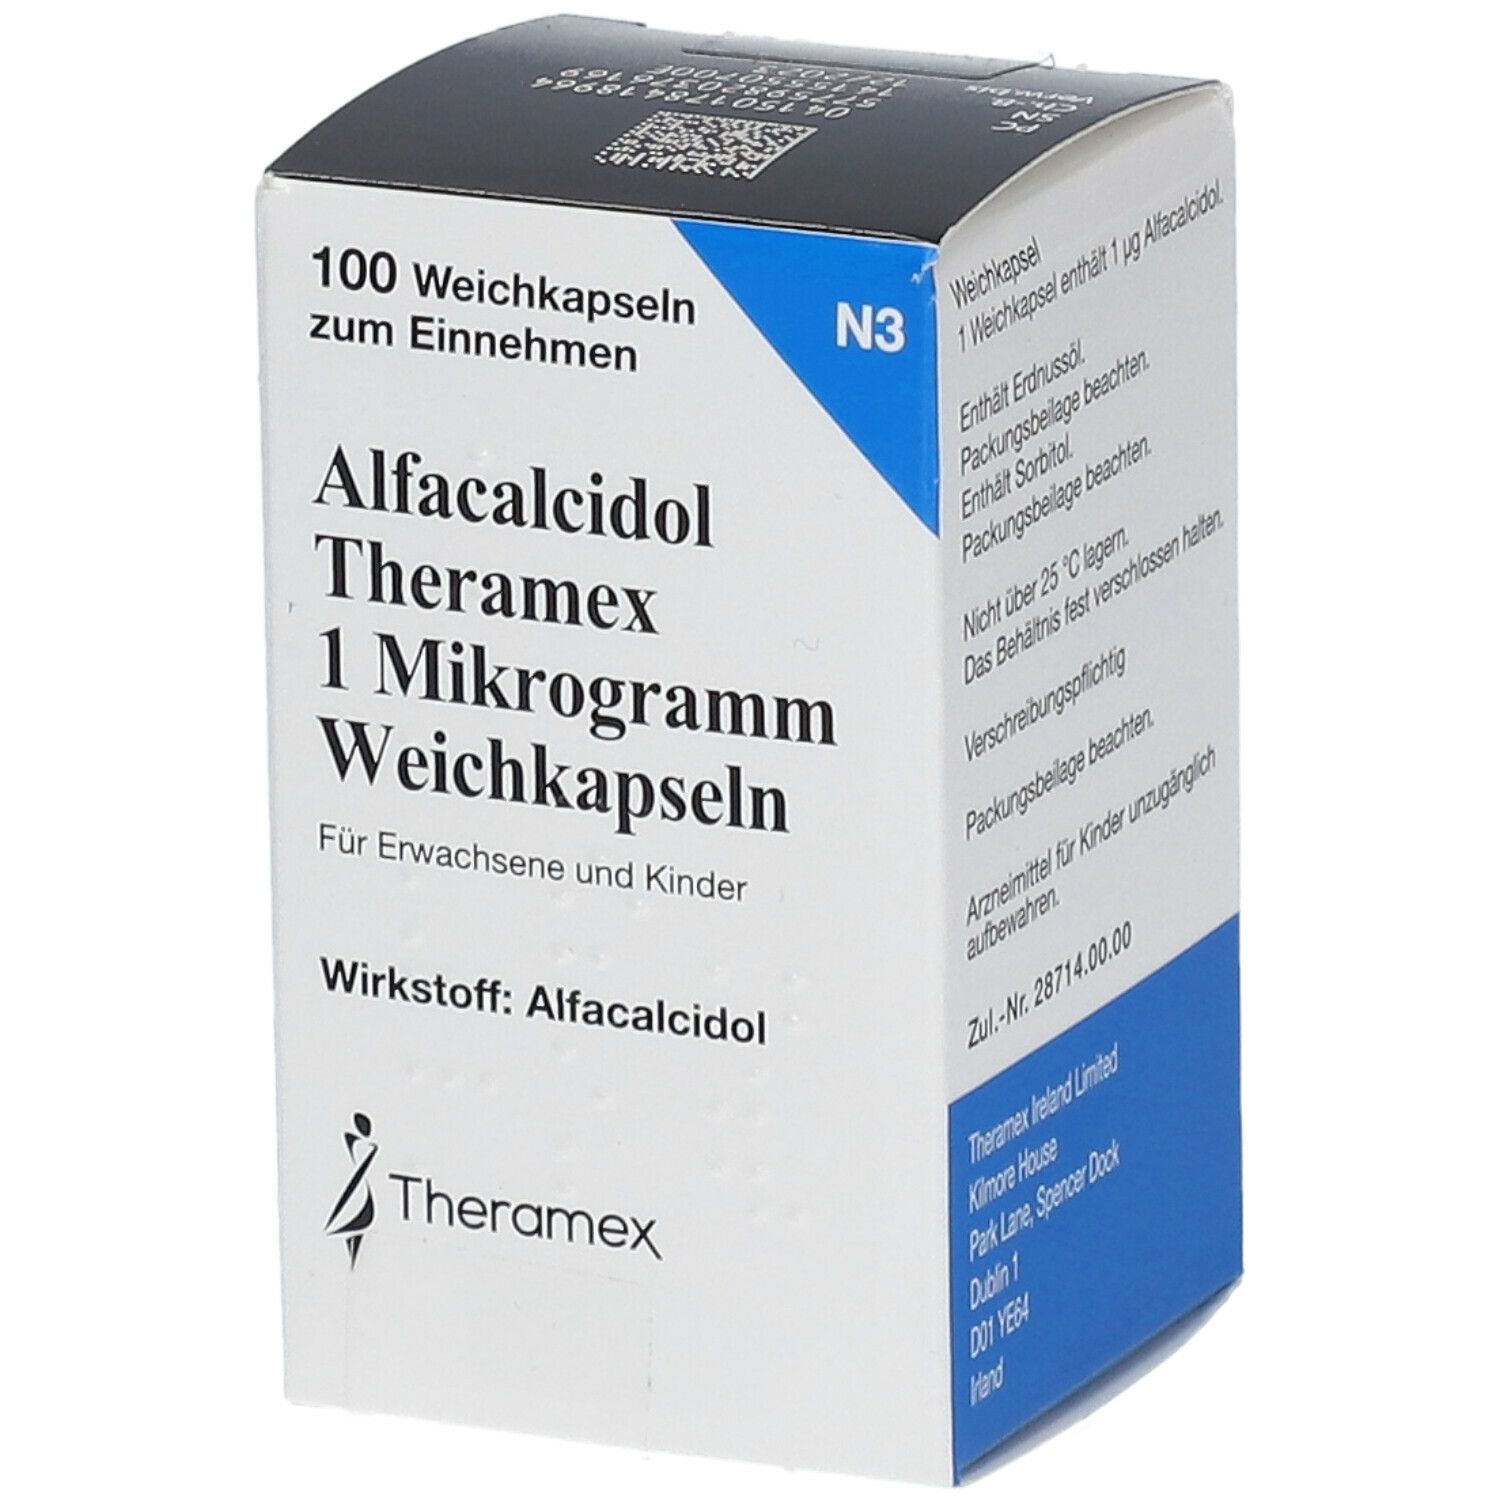 Alfacalcidol Theramex 1 Mikrogramm Weichkapseln